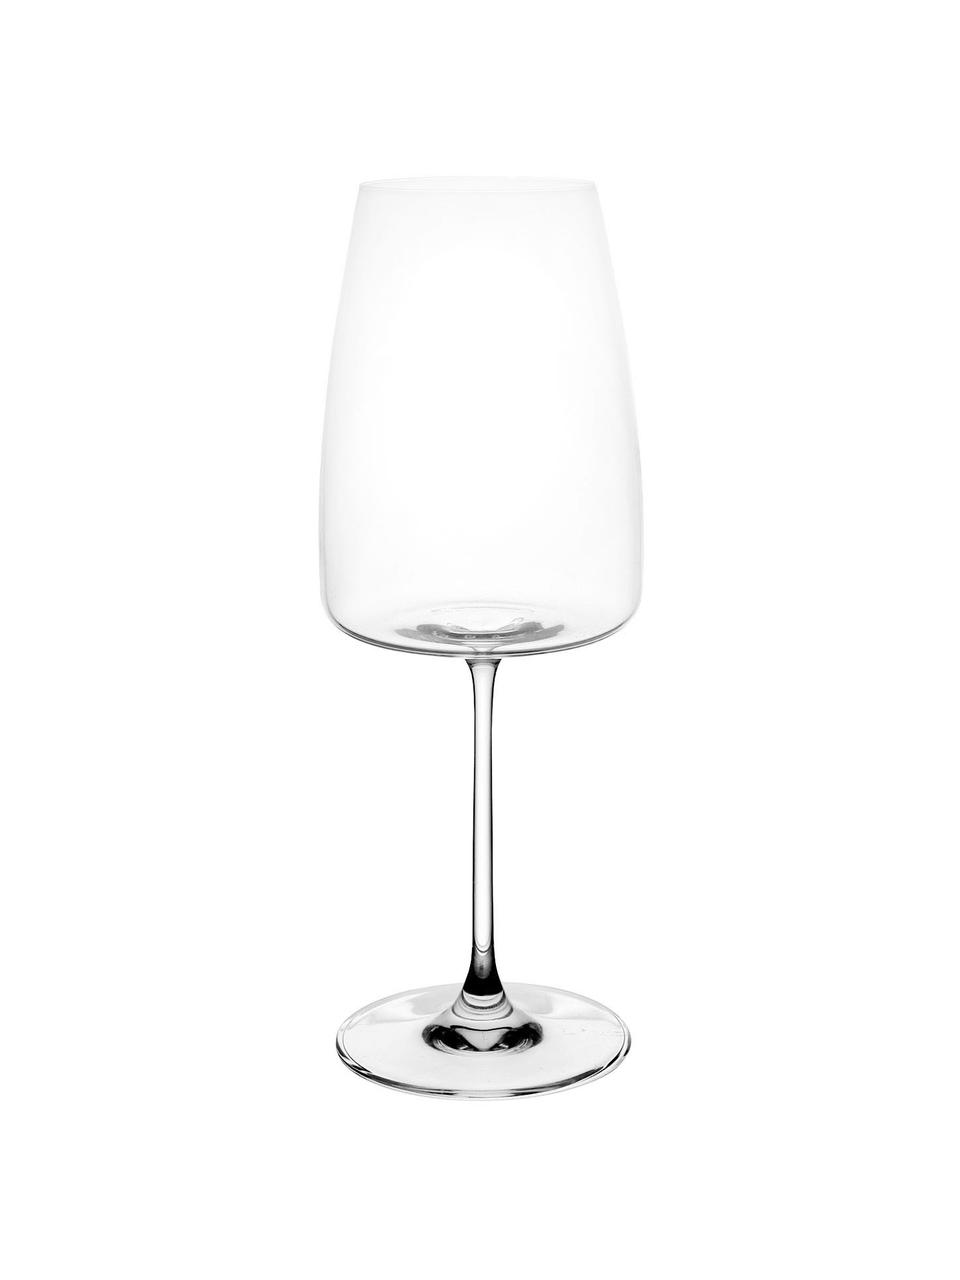 Křišťálová sklenice na červené víno Moinet, 6 ks, Křišťál, Transparentní, Ø 9 x V 23 cm, 500 ml